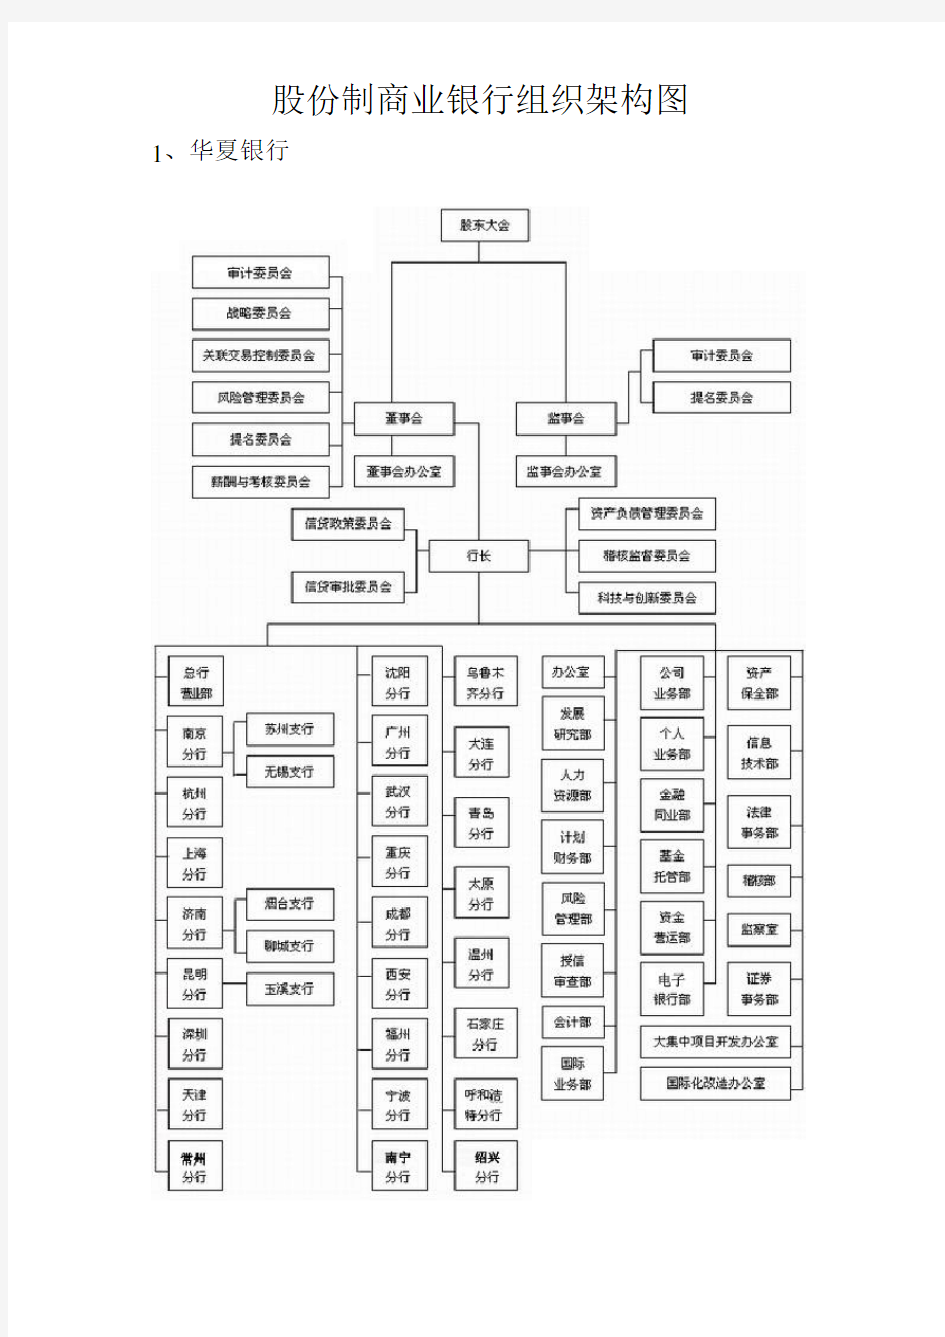 [附件1]商业银行的组织架构图